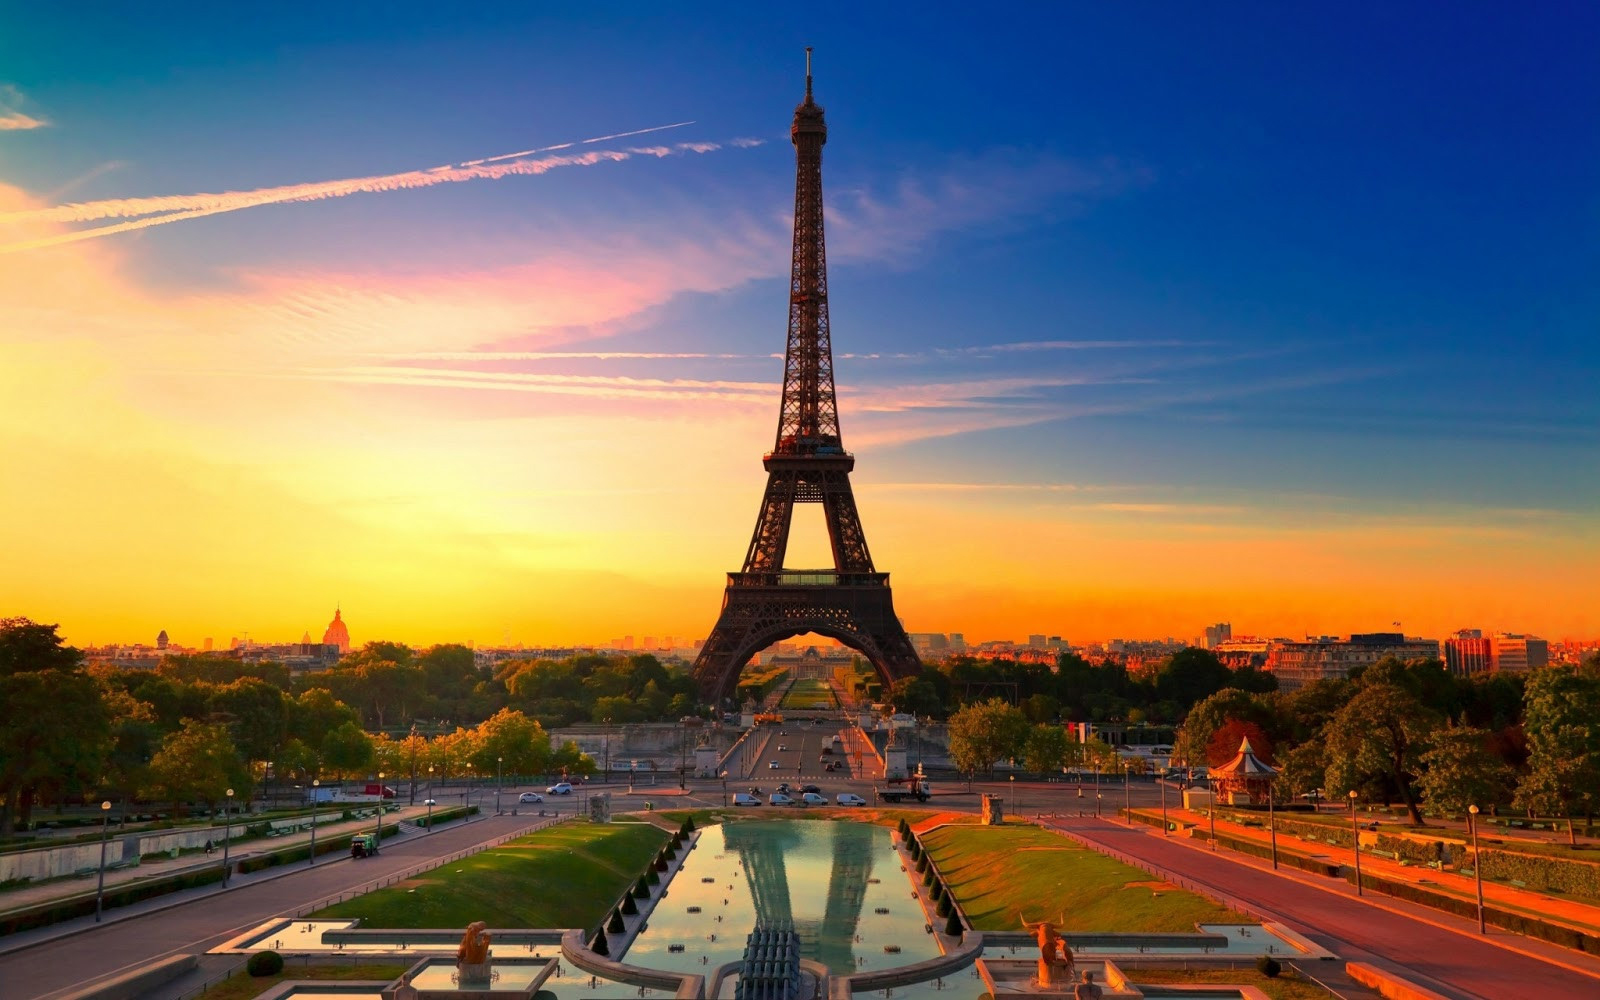 Tháp Eiffel xây dựng năm 1889 trở thành công trình biểu tượng của nước Pháp.